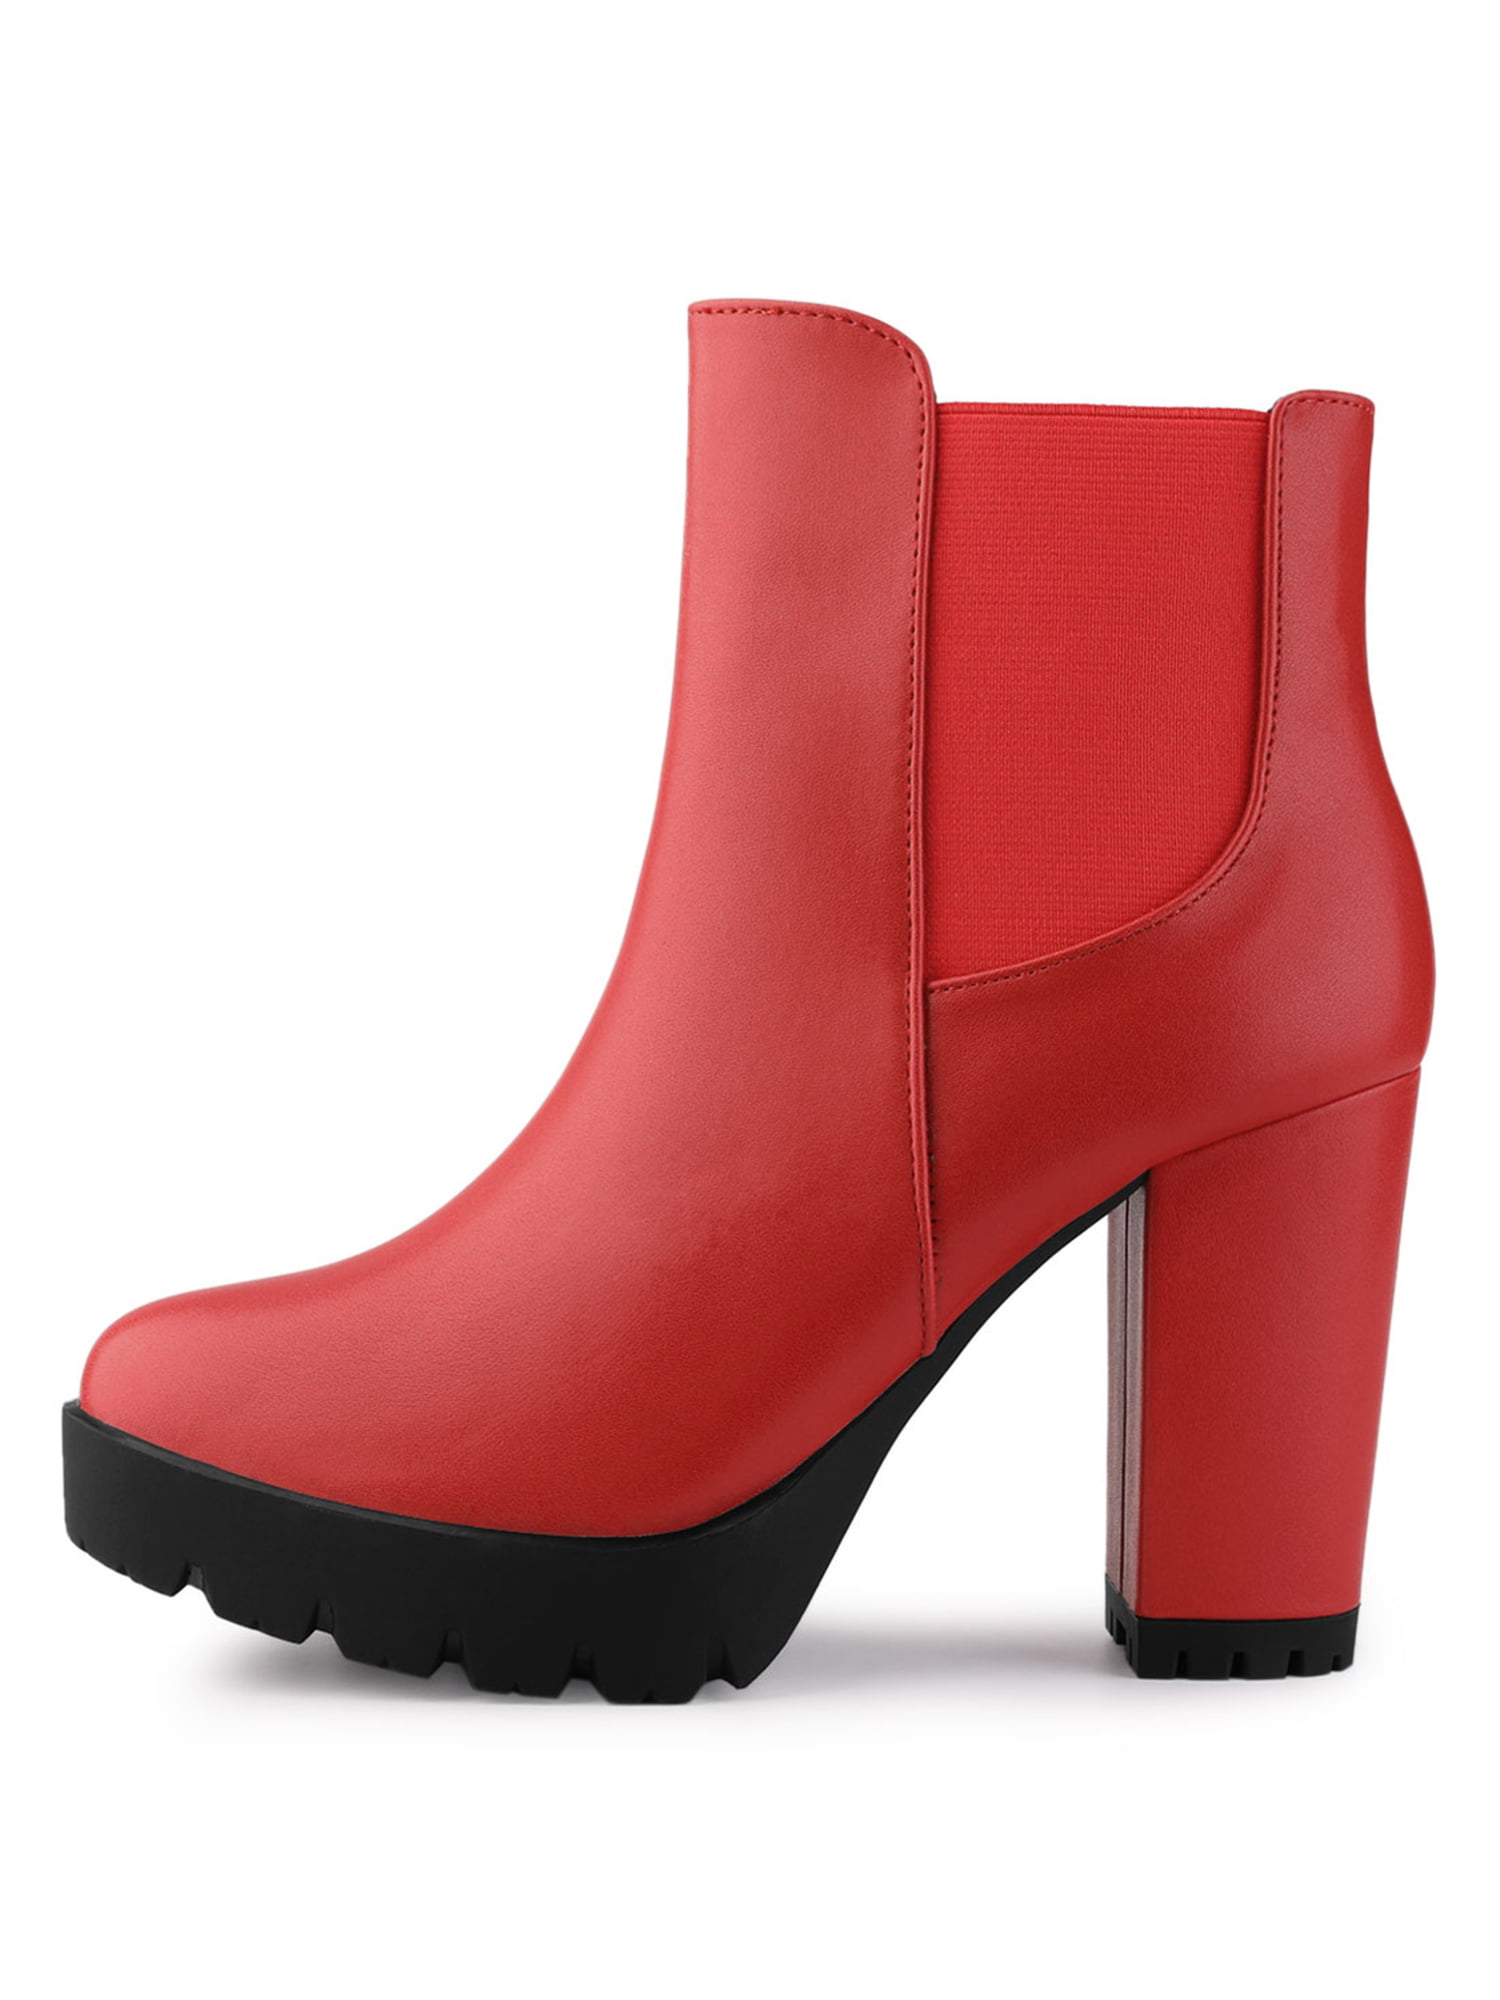 Details about   Party Women Platform Ankle Boots Block Heel Round Toe Party Shoes 44/47 Pumps L